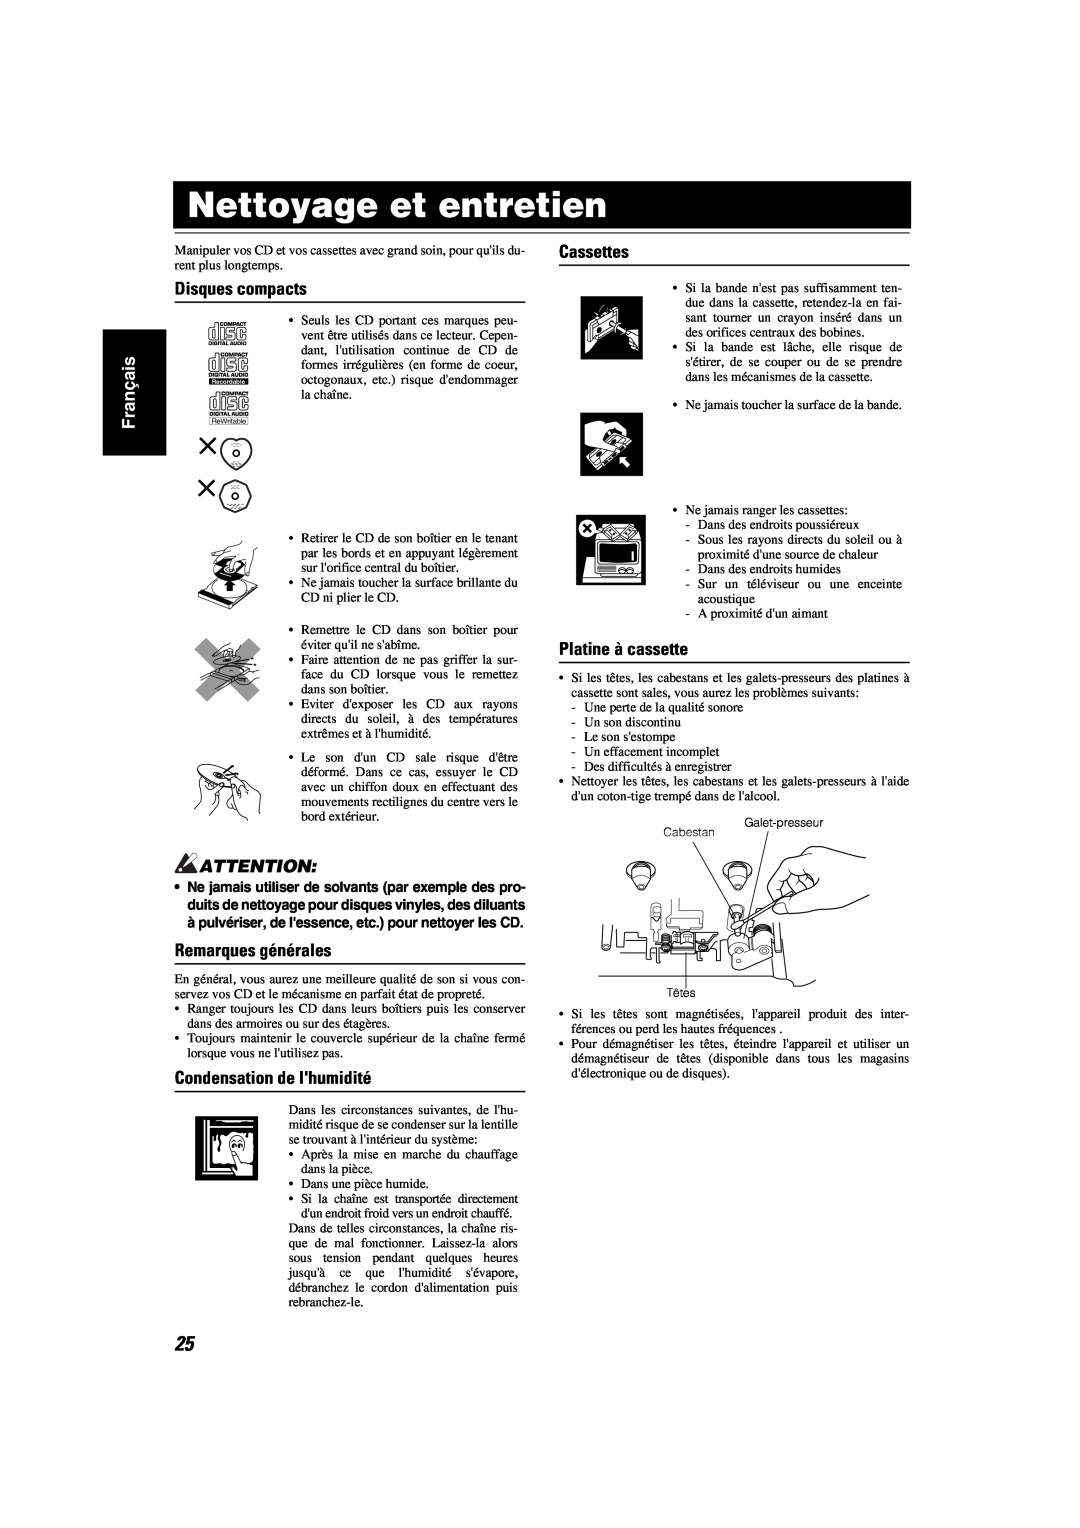 JVC MX-KA6 manual Nettoyage et entretien, Disques compacts, Cassettes, Platine à cassette, Remarques générales, Français 